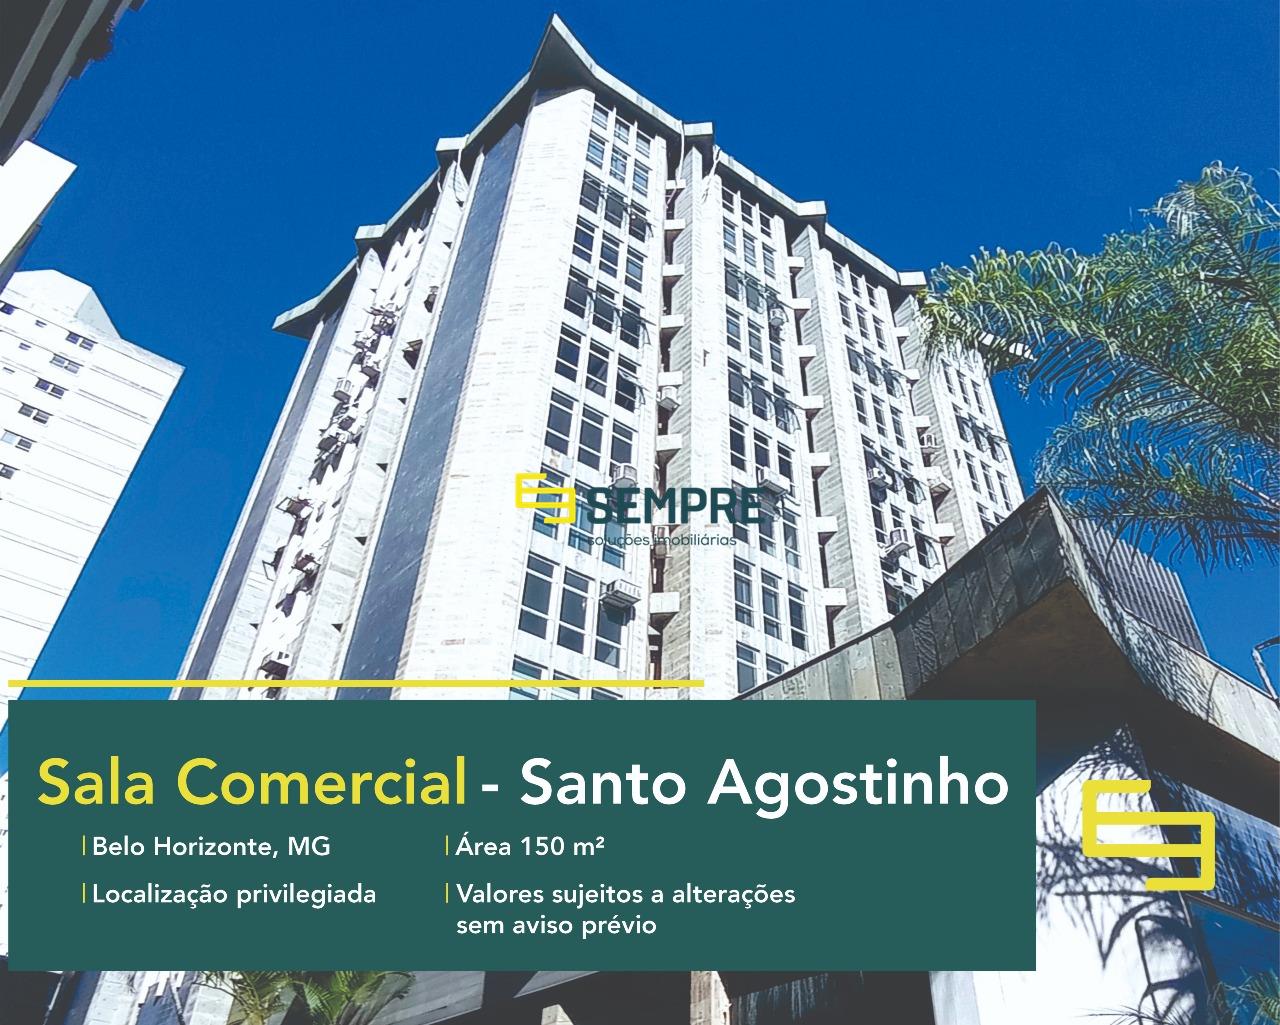 Sala comercial para alugar no Santo Agostinho em Belo Horizonte, excelente localização. O estabelecimento comercial conta com área de 150 m².